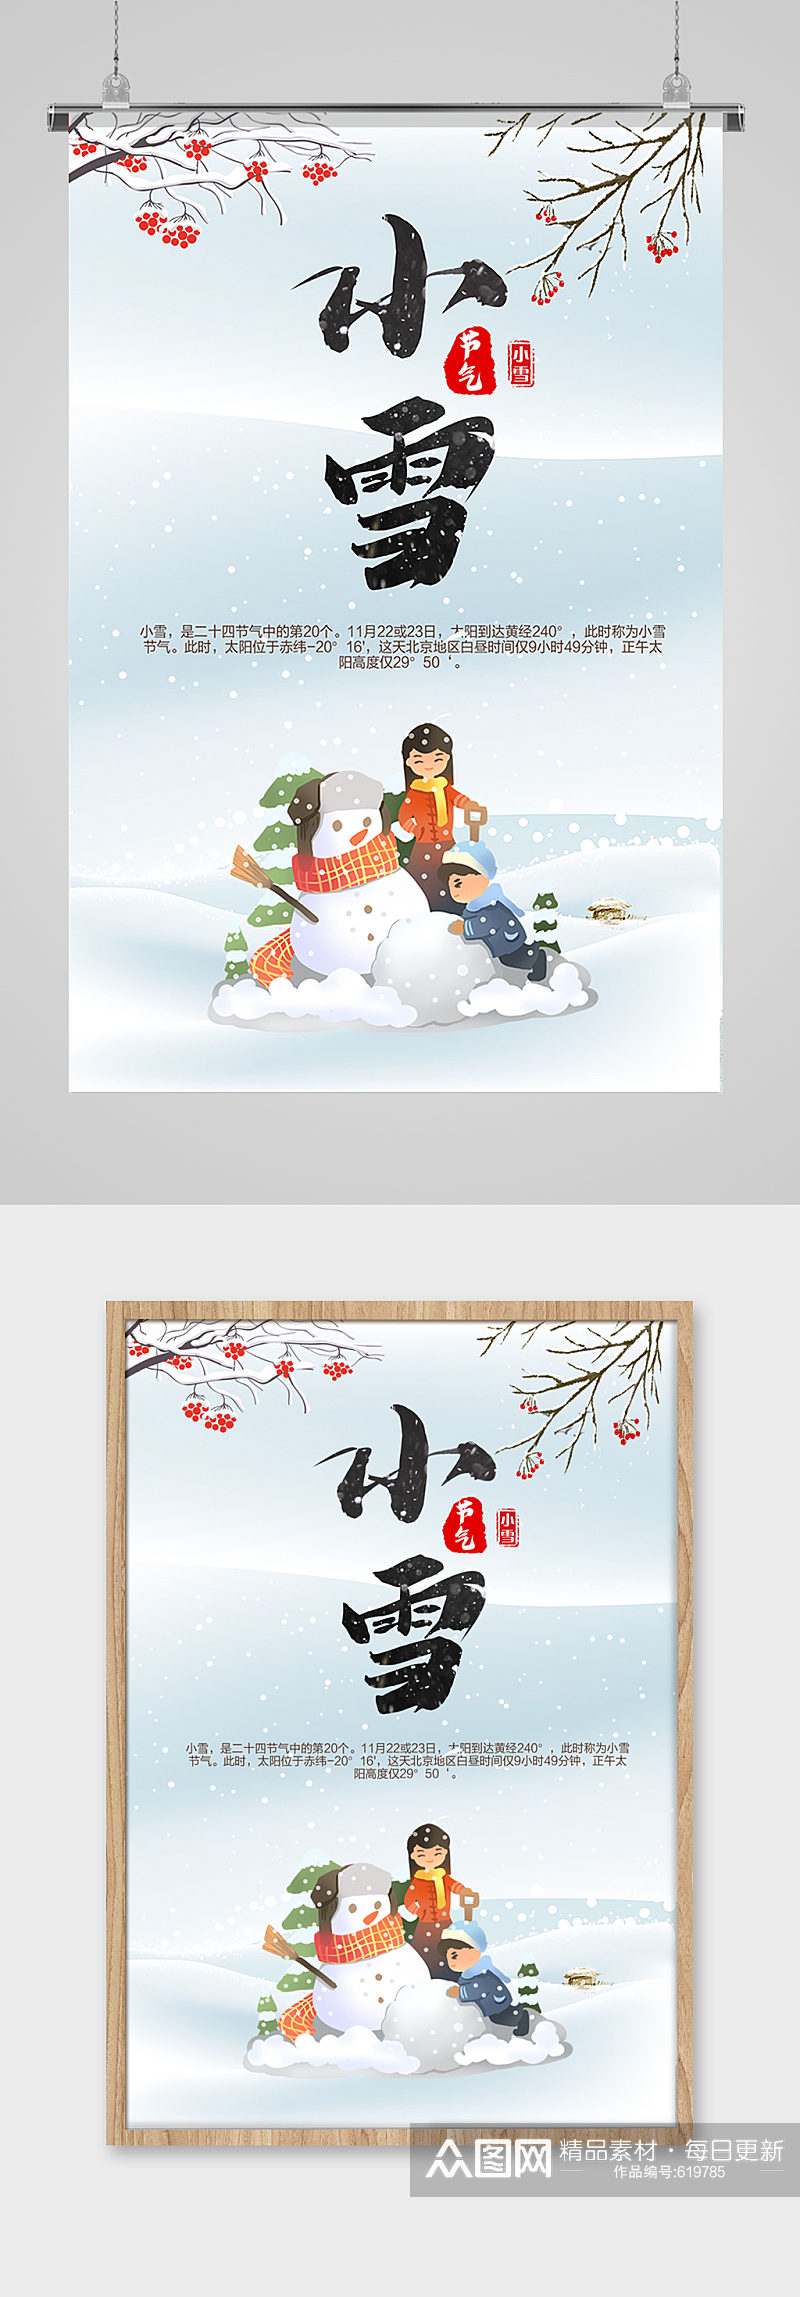 堆雪人卡通手绘小雪风景海报素材